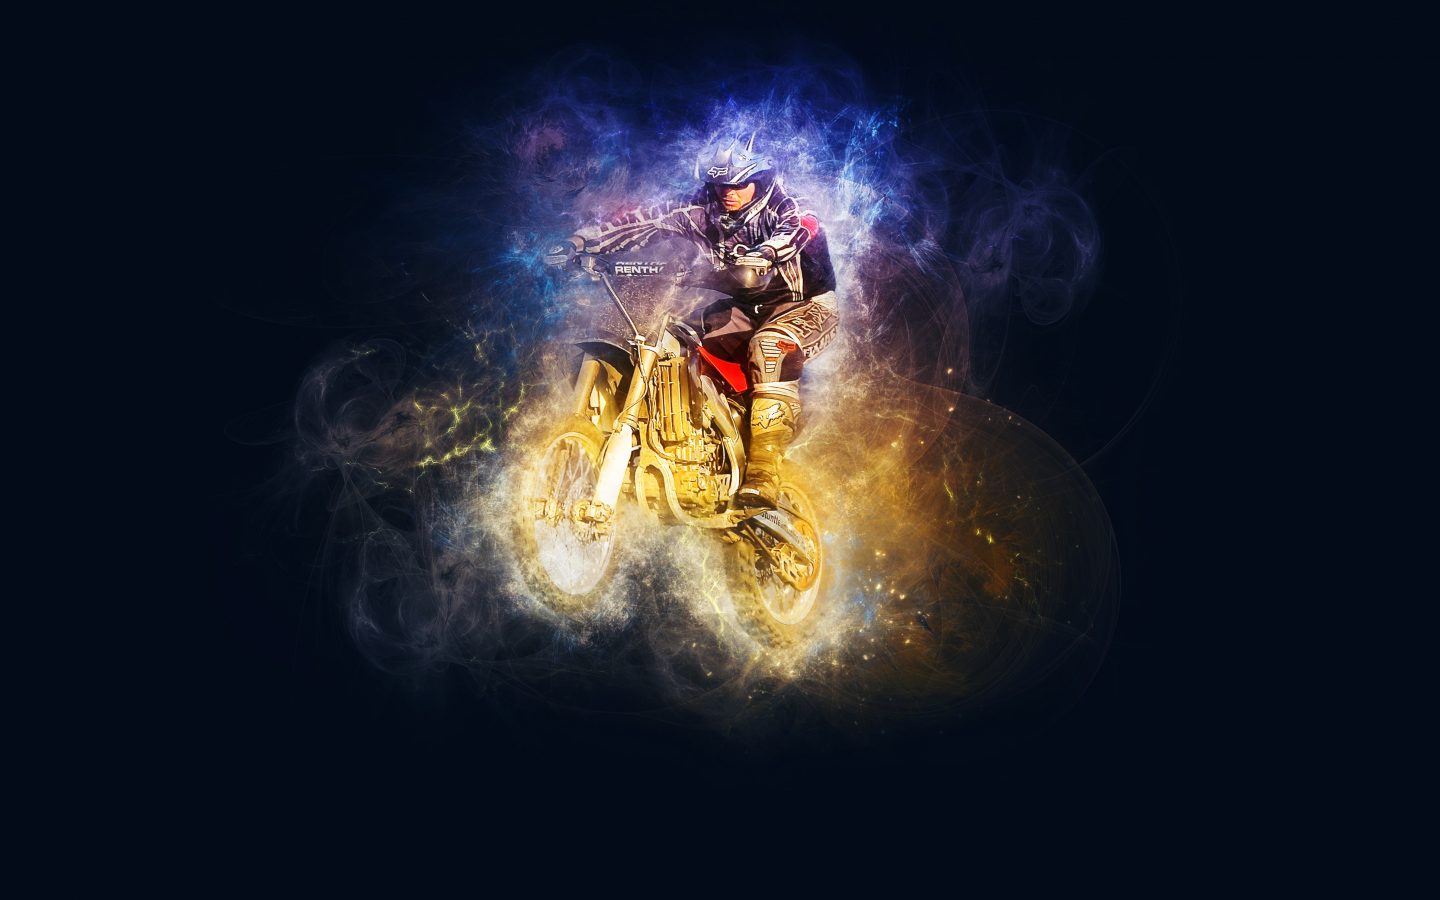 Motocross Riding 4K UHD Wallpaper